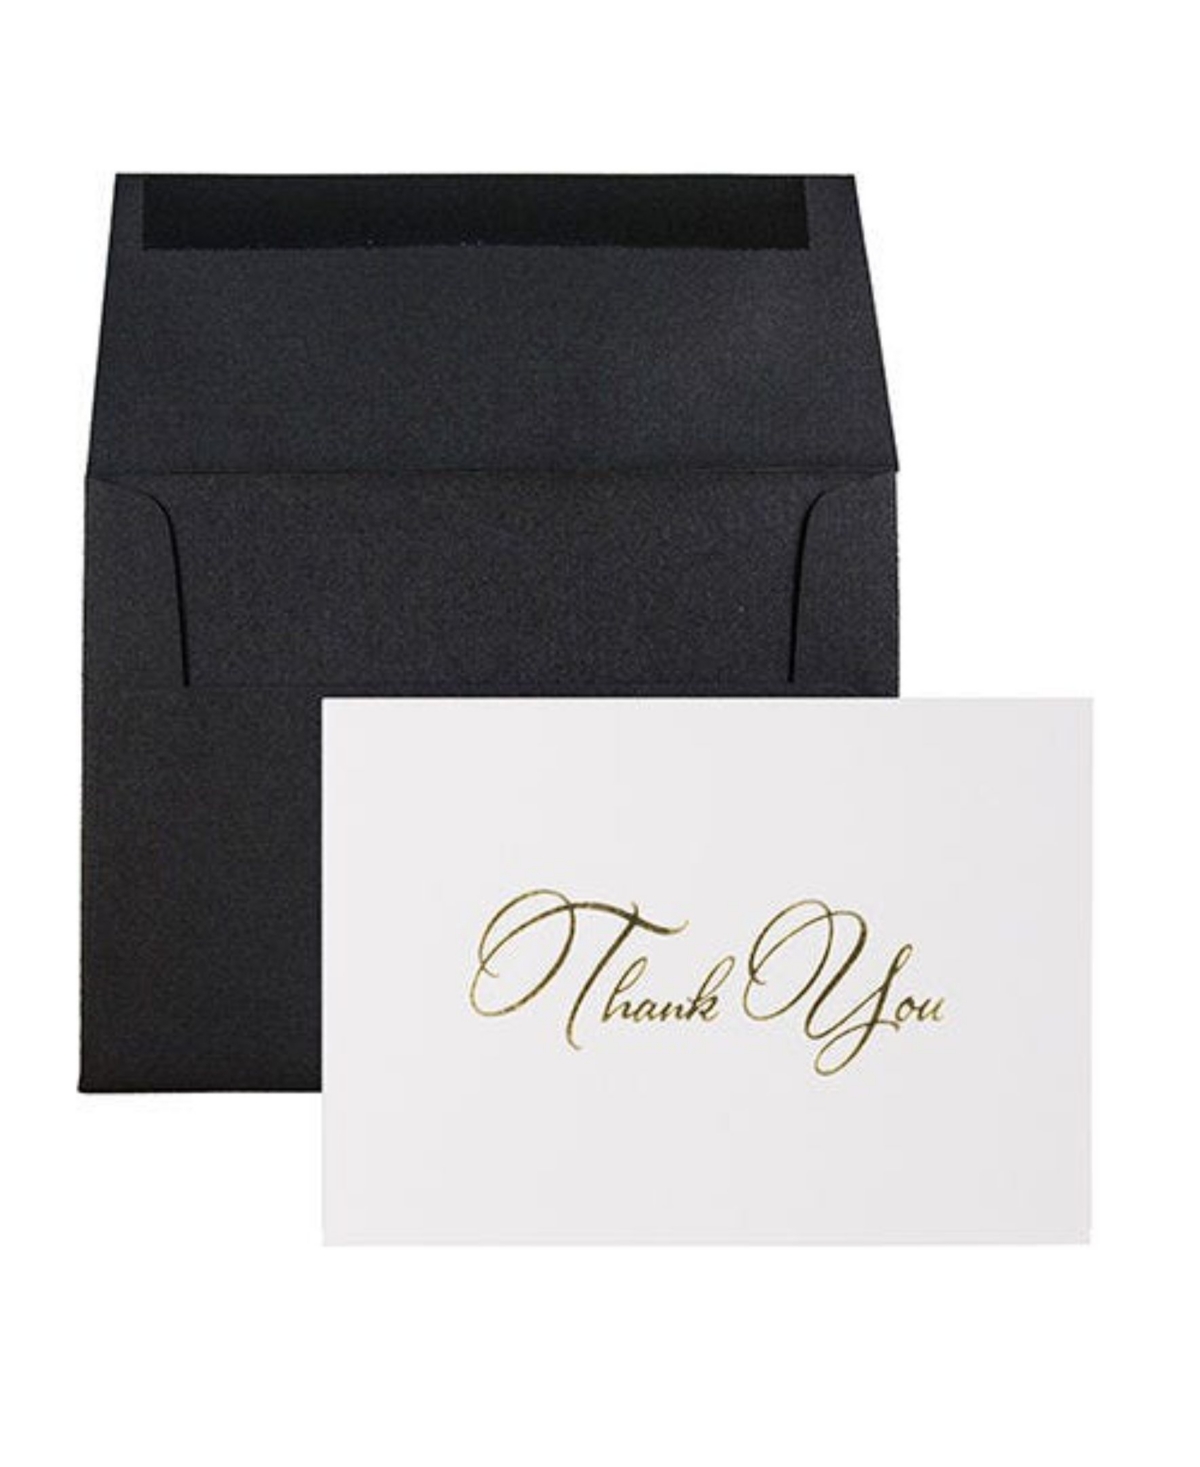 Thank You Card Sets - 25 Cards and Envelopes - Gold Script Cards Black Linen Envelopes